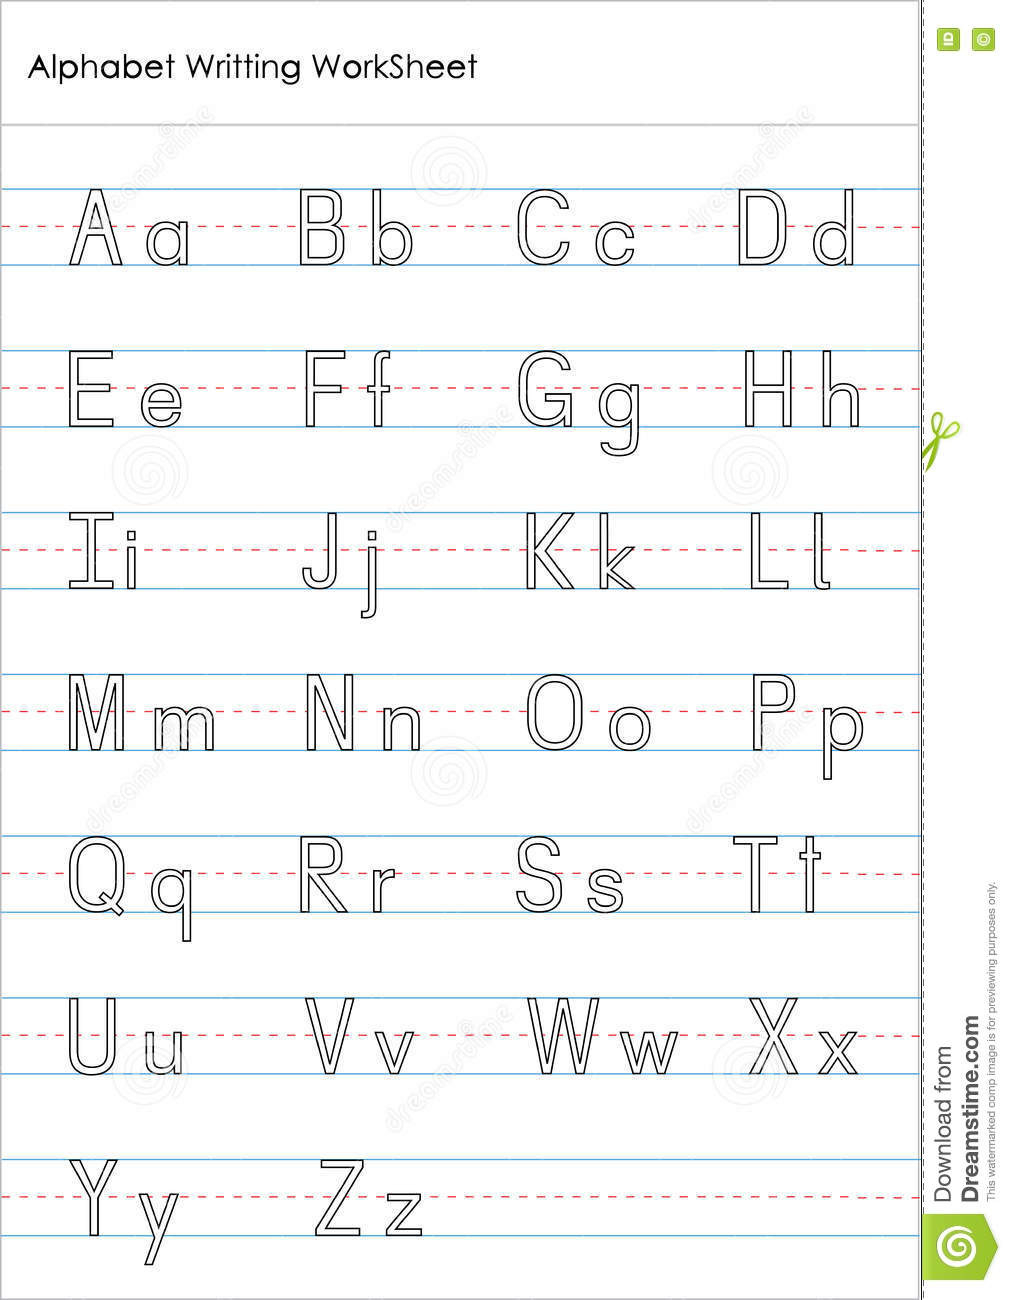 practice-cursive-writing-worksheetpdf-english-alphabet-worksheet-printable-kids-learning